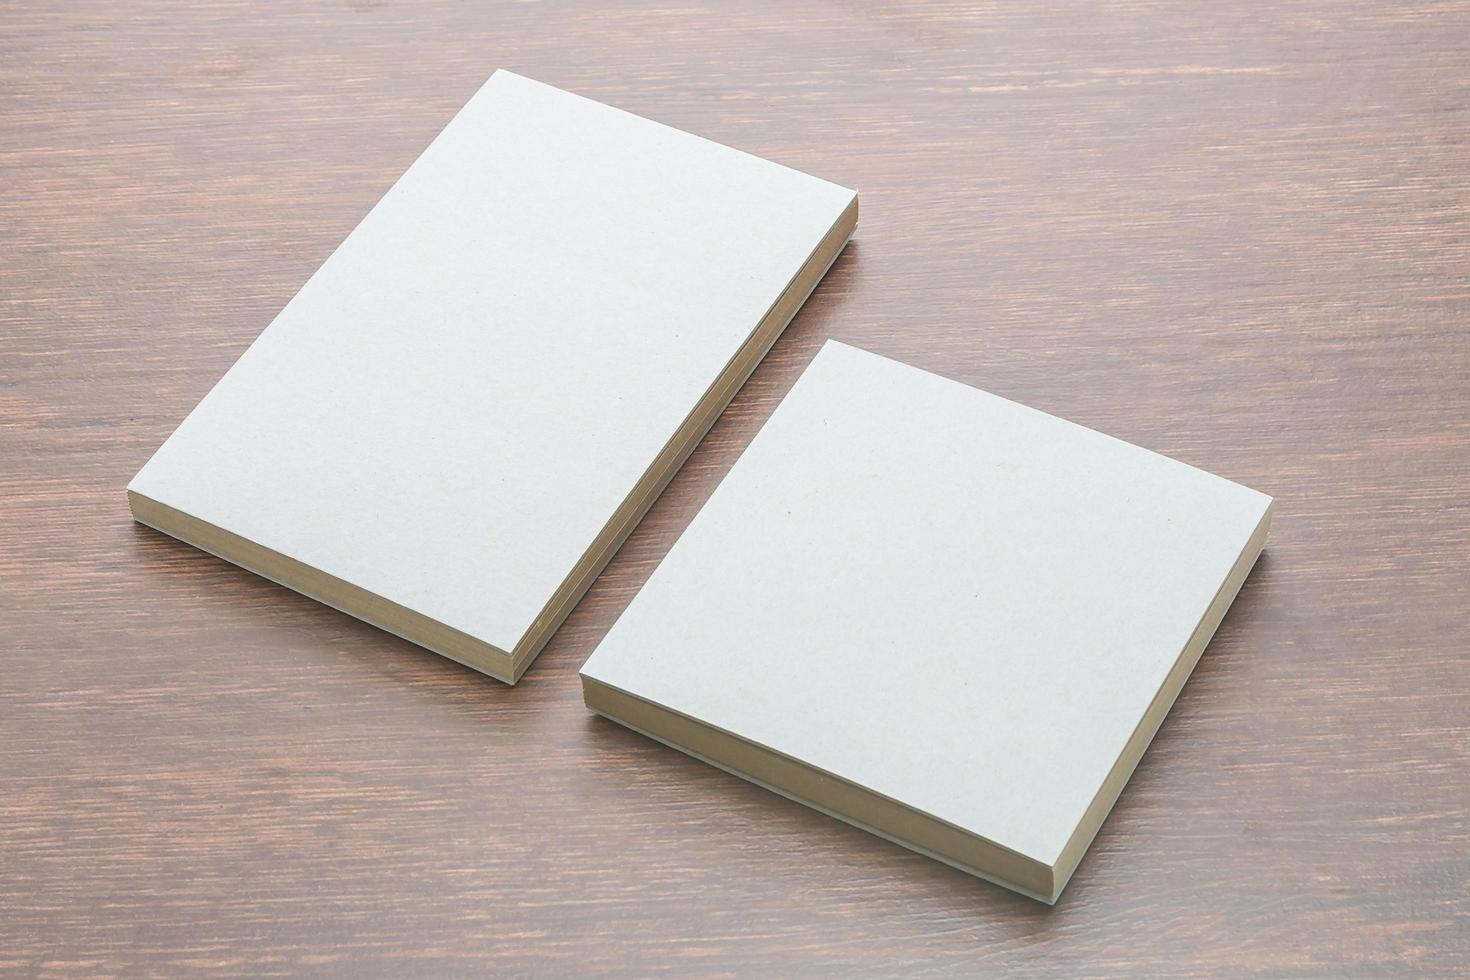 maqueta de cuaderno en blanco foto